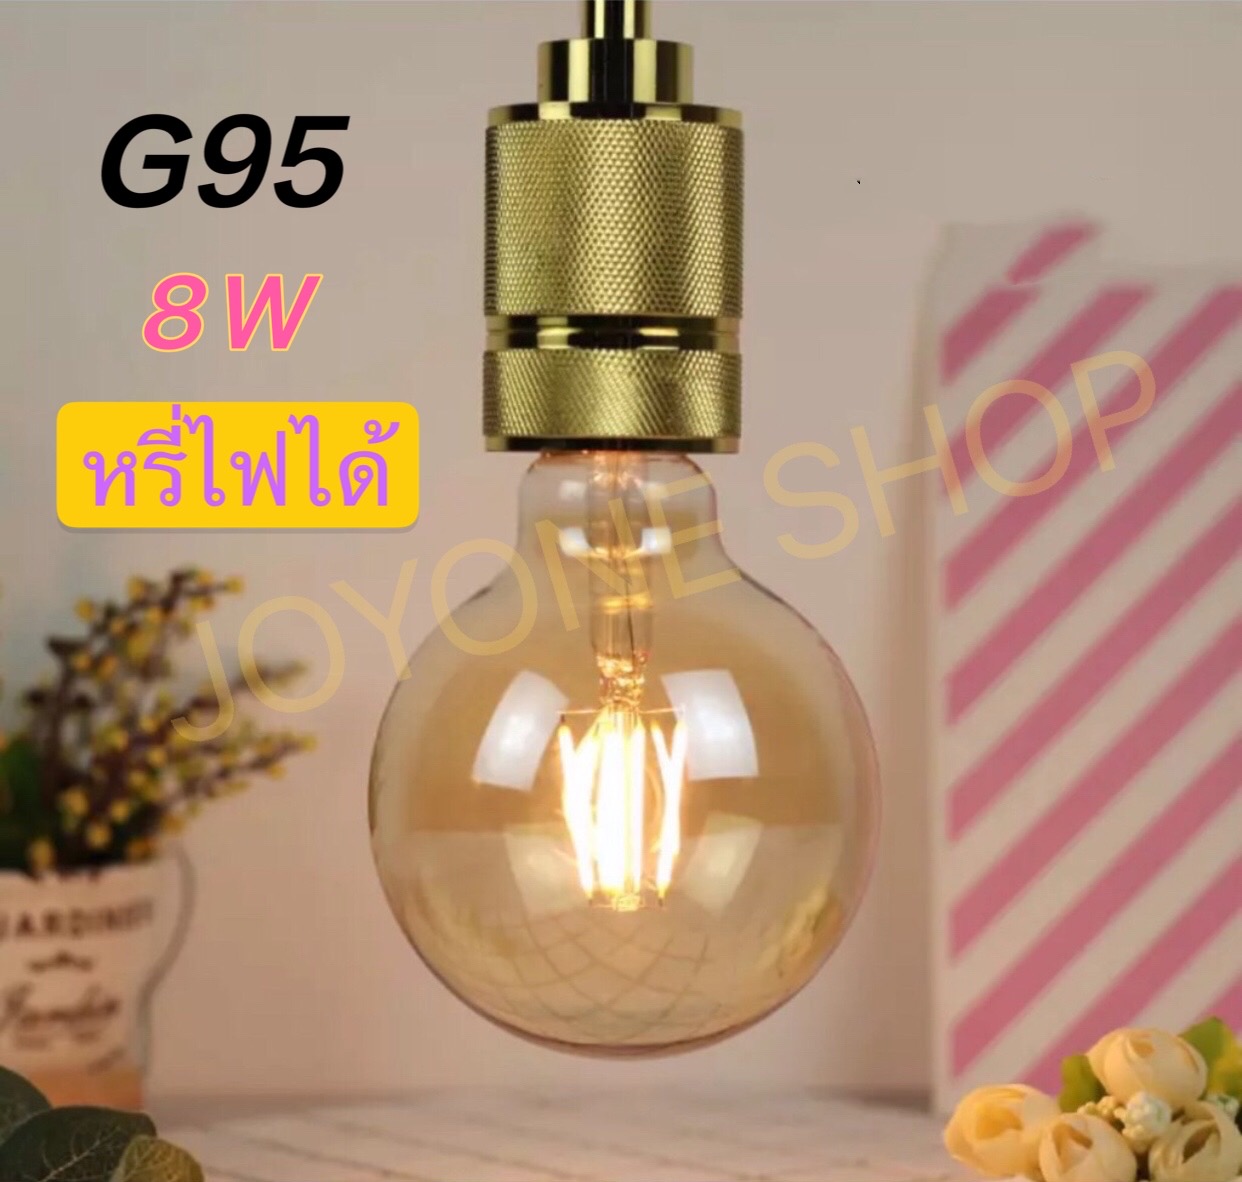 หลอดไฟวินเทจ หลอด ST64 G95 LED E27 Filament ฟิลาเมนต์ ทรงเอดิสัน4w/8W แสงวอร์ม สี G95 8W หรี่ไฟได้ สี G95 8W หรี่ไฟได้